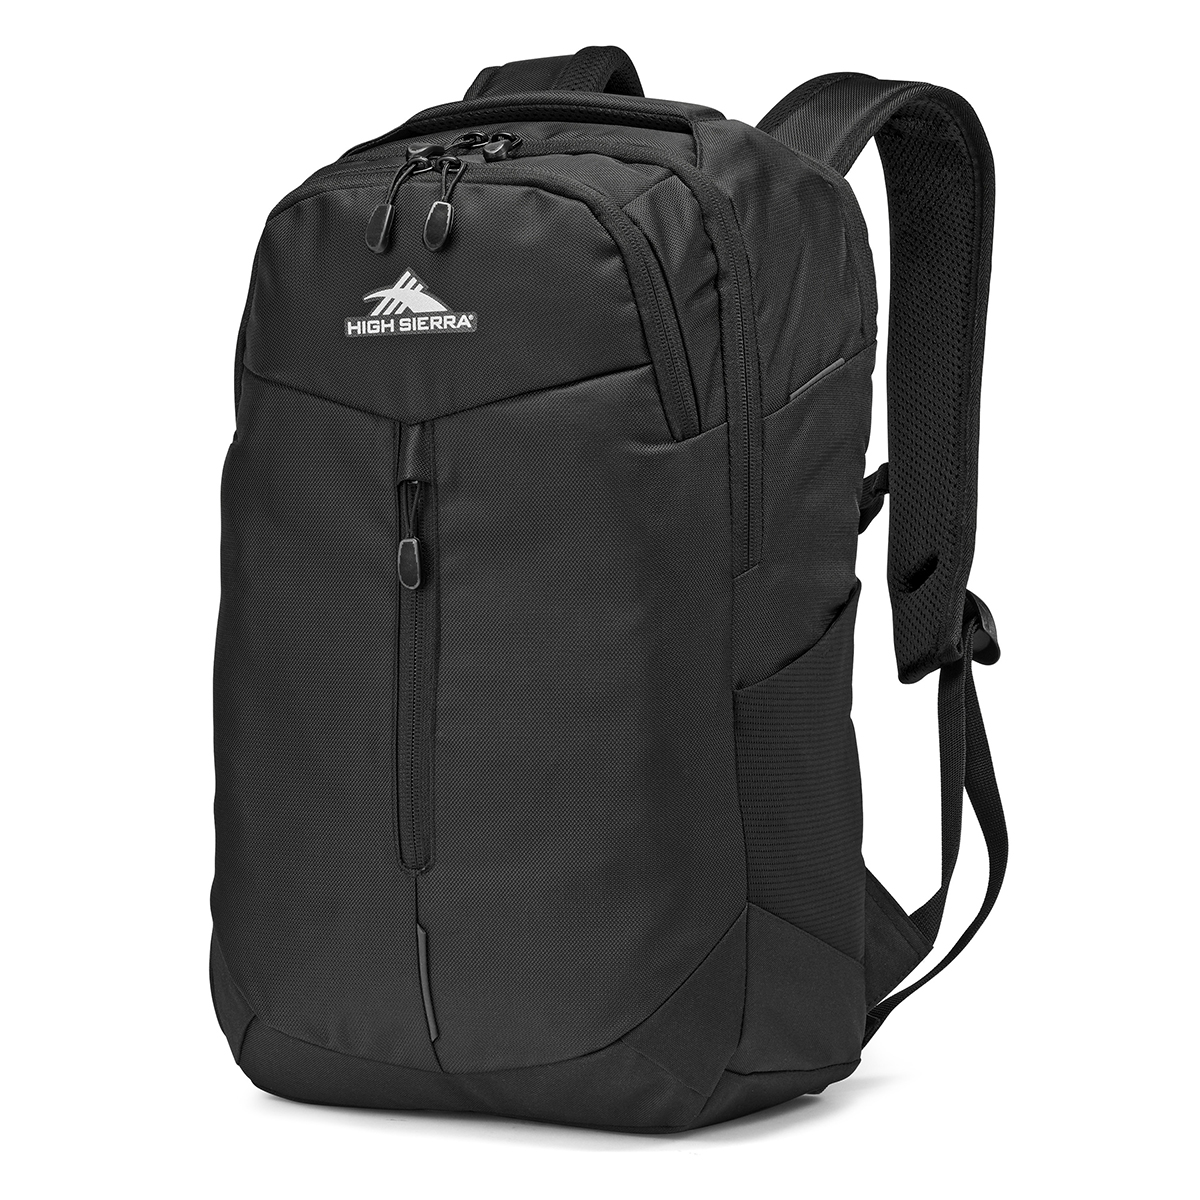 High Sierra(R) Swerve Pro Black Backpack